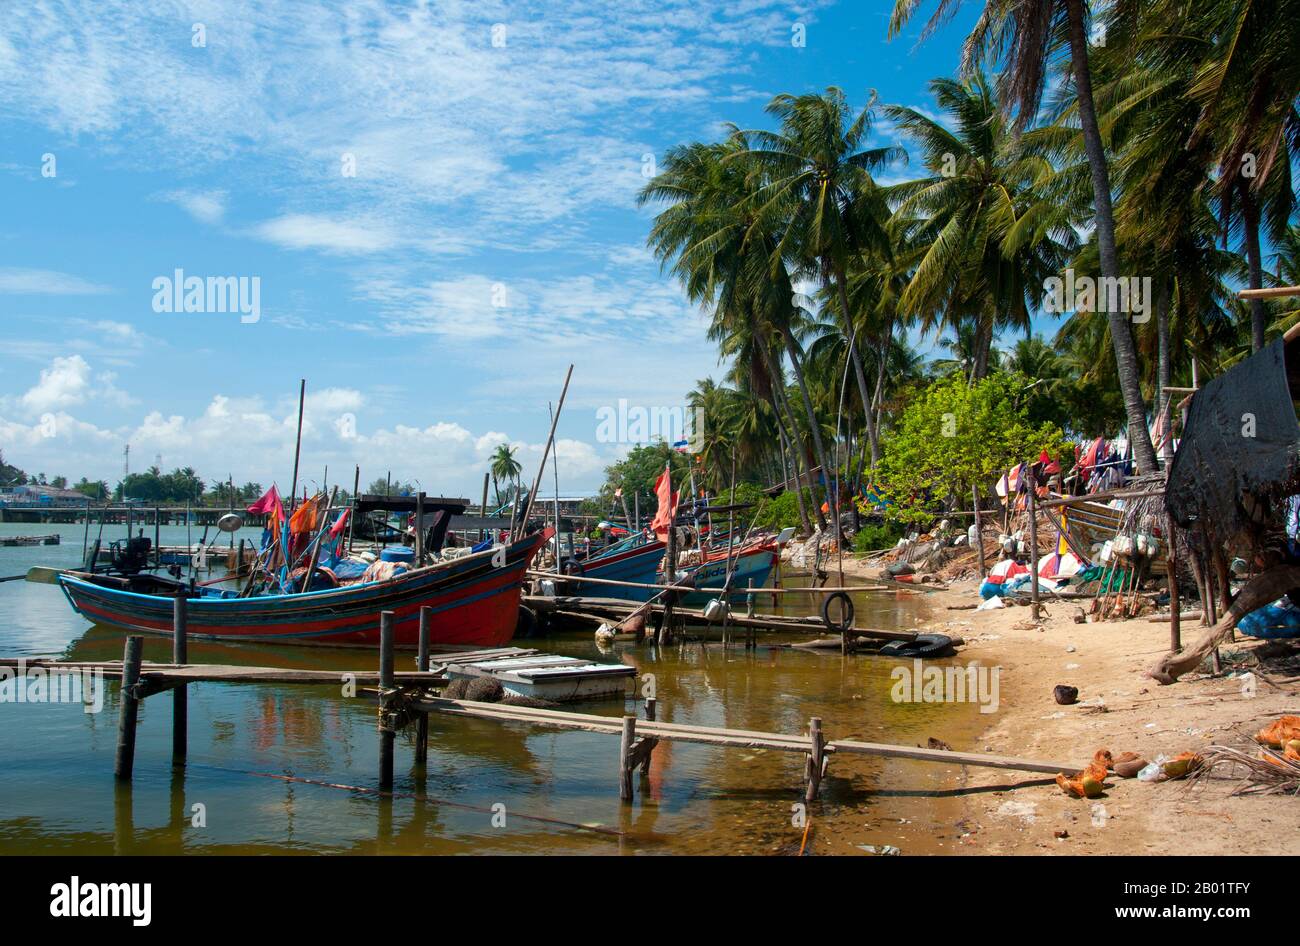 Thailandia: Villaggio di pescatori musulmano, Saiburi, Thailandia meridionale. Il piccolo centro di Saiburi è la capitale del distretto di Saiburi, situato a circa 94 km (60 miglia) a sud-est di Pattani nel sud della Thailandia. È anche chiamato Selindung Bayu o “riparo dal vento” dalla popolazione locale di pescatori musulmana malese ed è forse il più importante porto di pesca al di fuori di Pattani nella stessa provincia di Pattani. Foto Stock